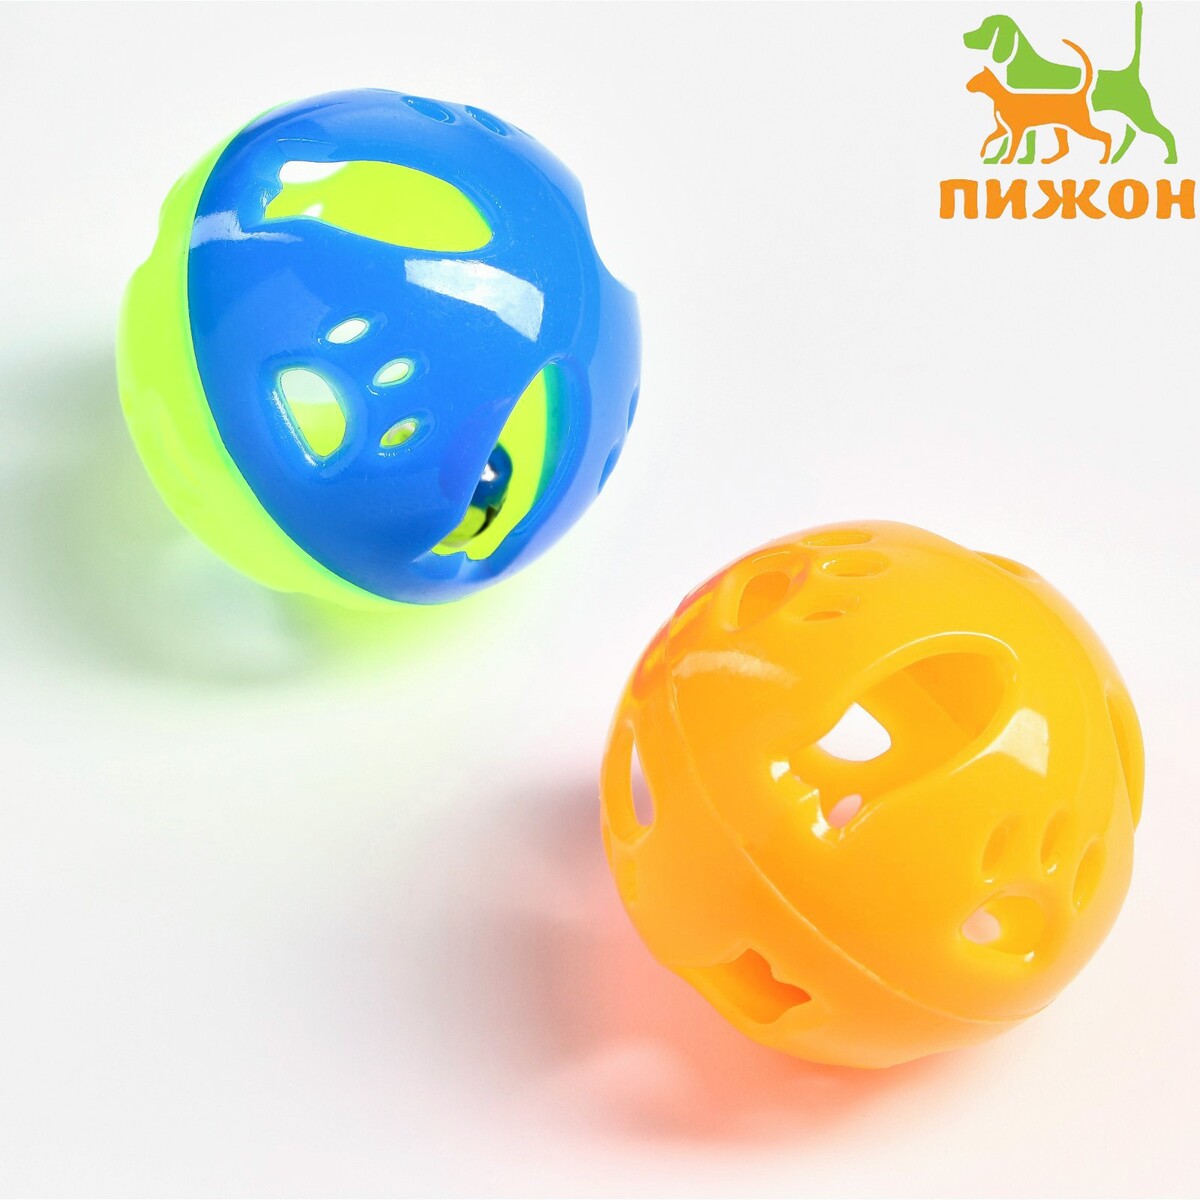 Набор из 2 шариков-погремушек набор из 2 плетеных шариков из лозы с бубенчиком 3 см желтый зеленый